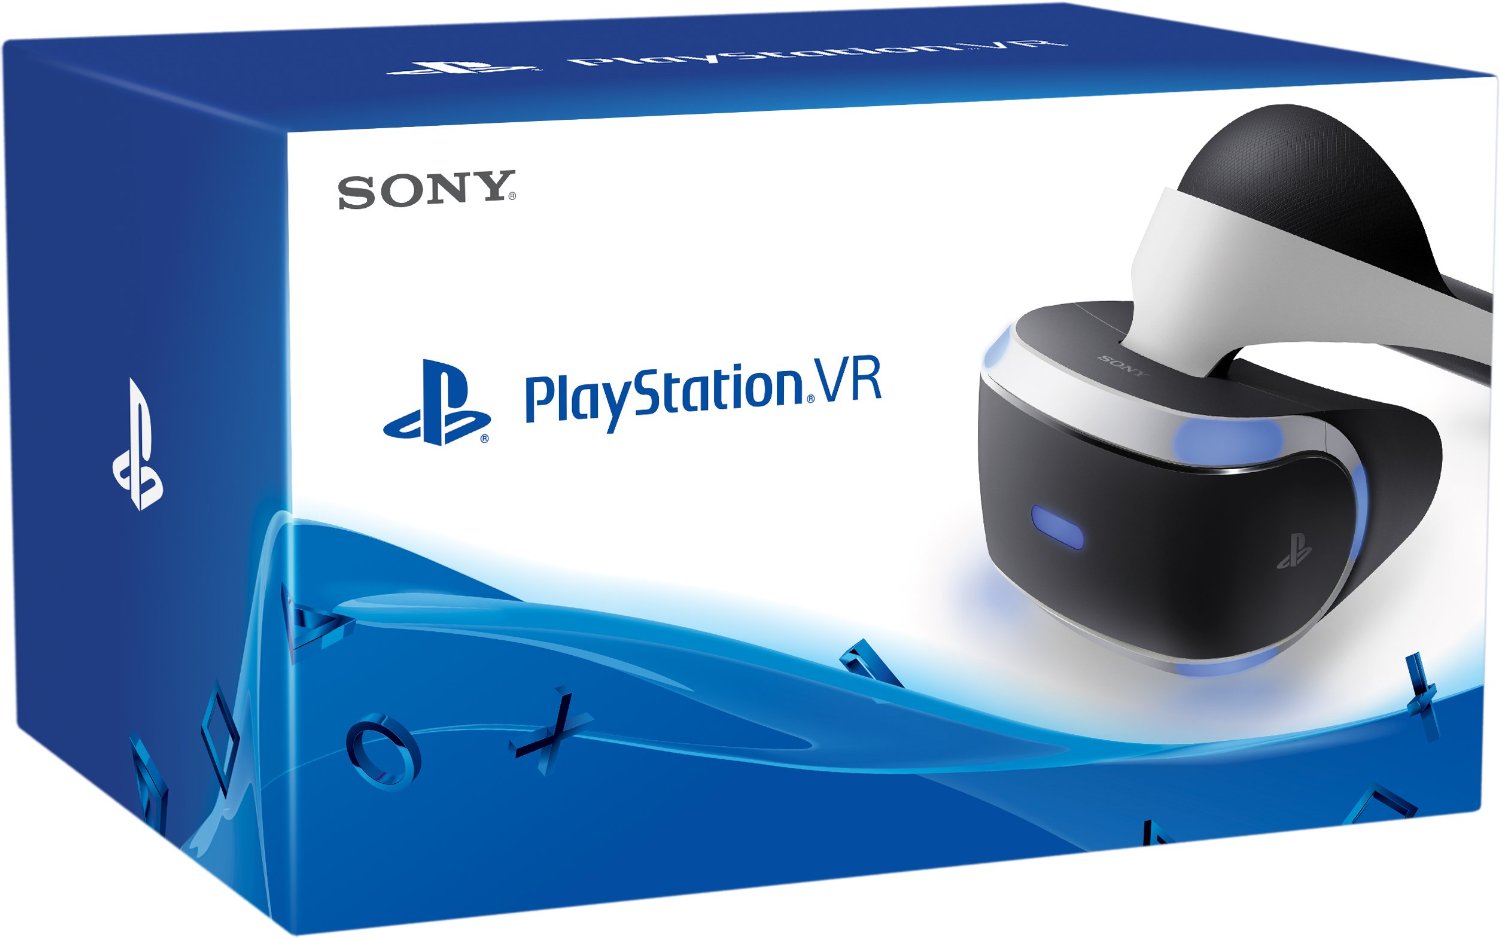 Playstation VR ausverkauft, Sony will Produktion erhöhen